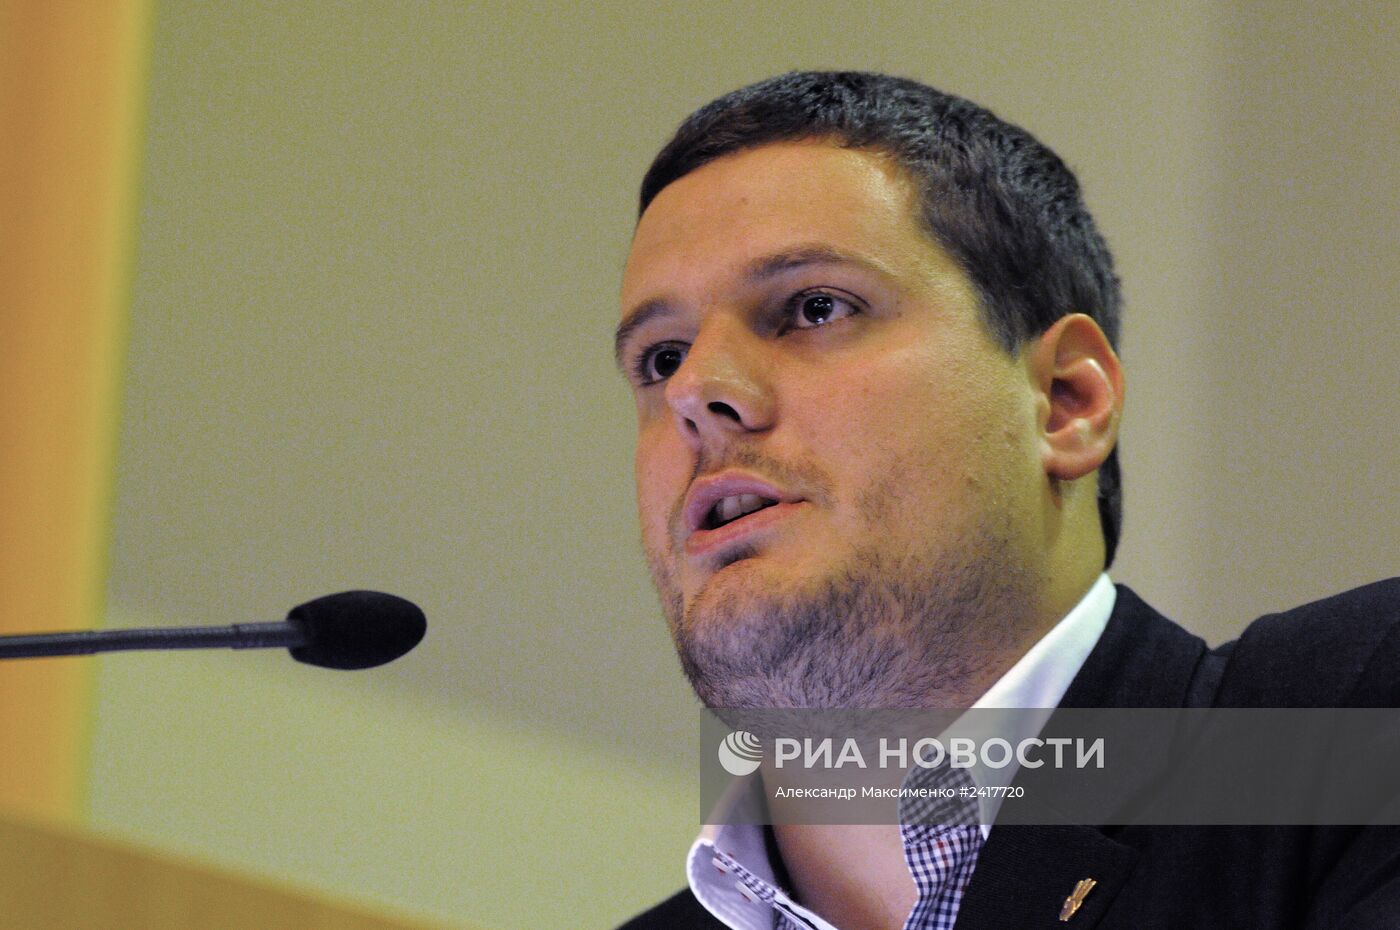 Кандидат на пост мэра Киева, народный депутат от ВО "Свобода" Андрей Ильенко